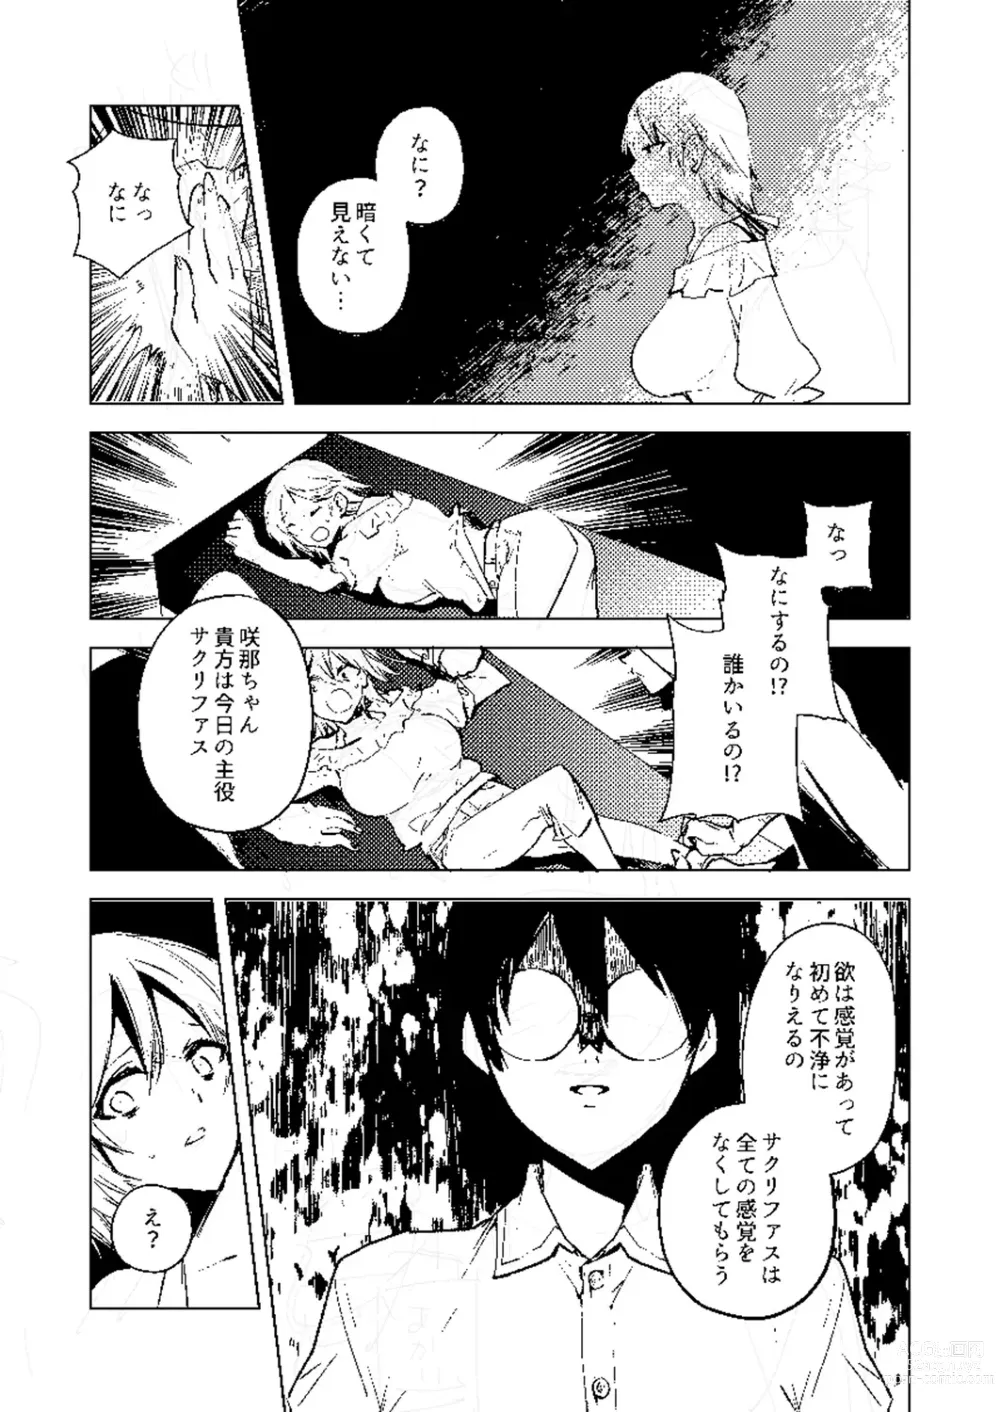 Page 282 of manga Bad endroll